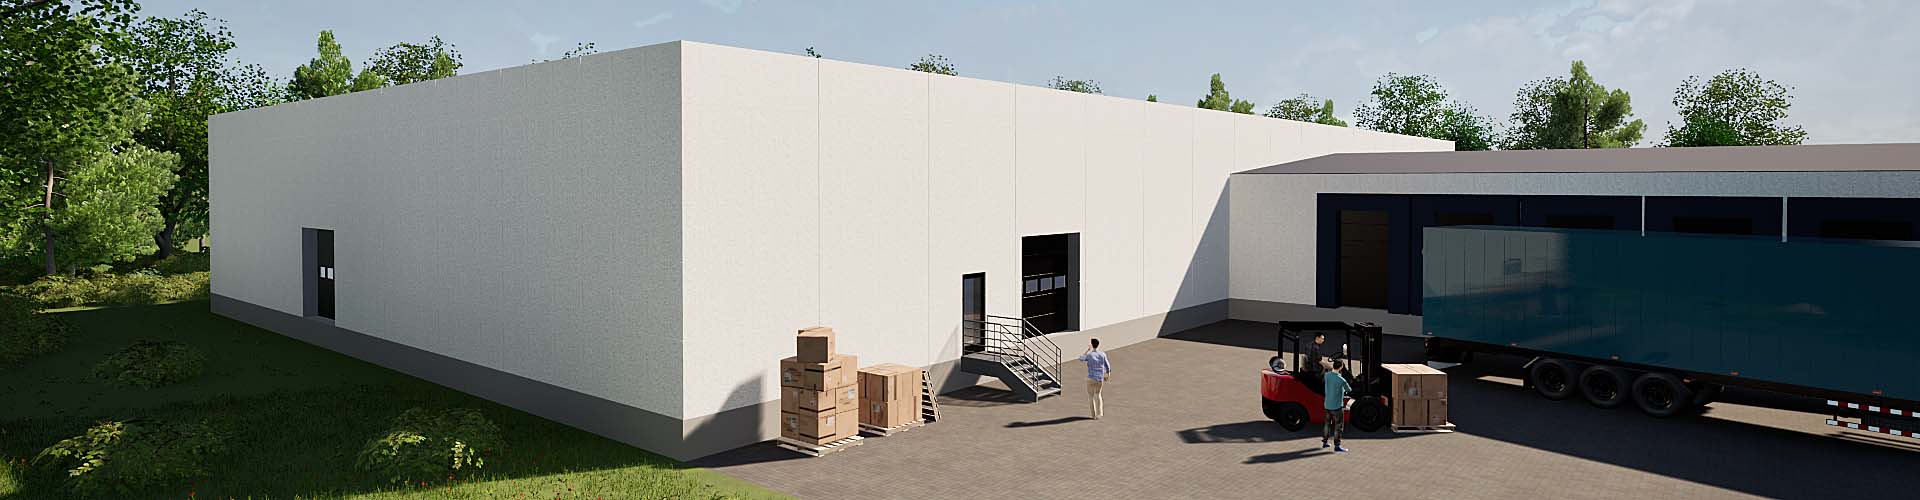 Ny lagerbygning i Århus